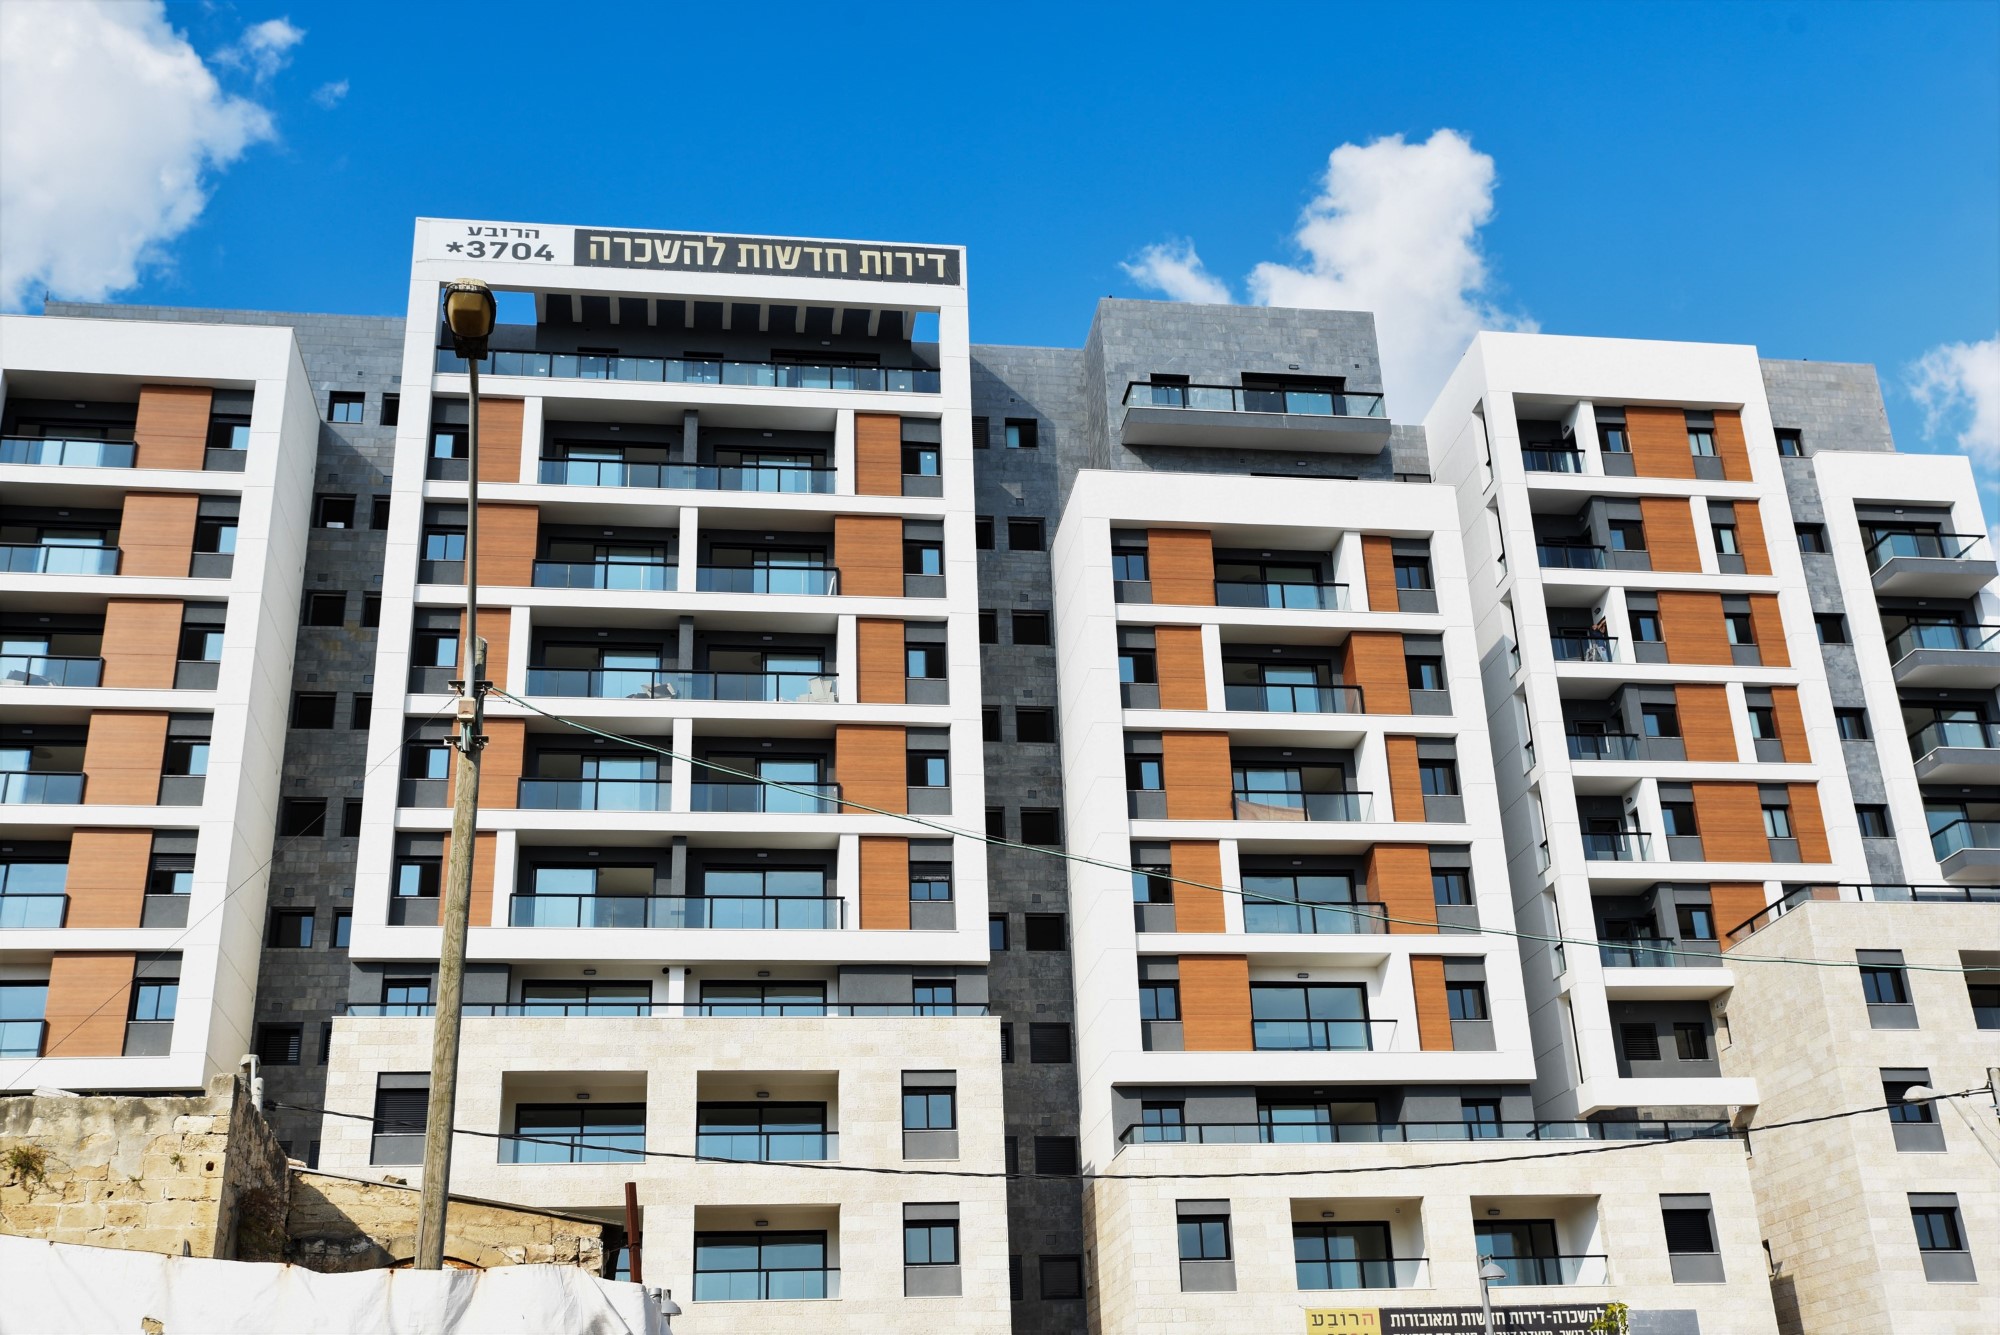 מבצע סוף שנה בפרויקט "הרובע" בחיפה:הנחה של 100-150 אלף שקל על דירות 4 חדרים